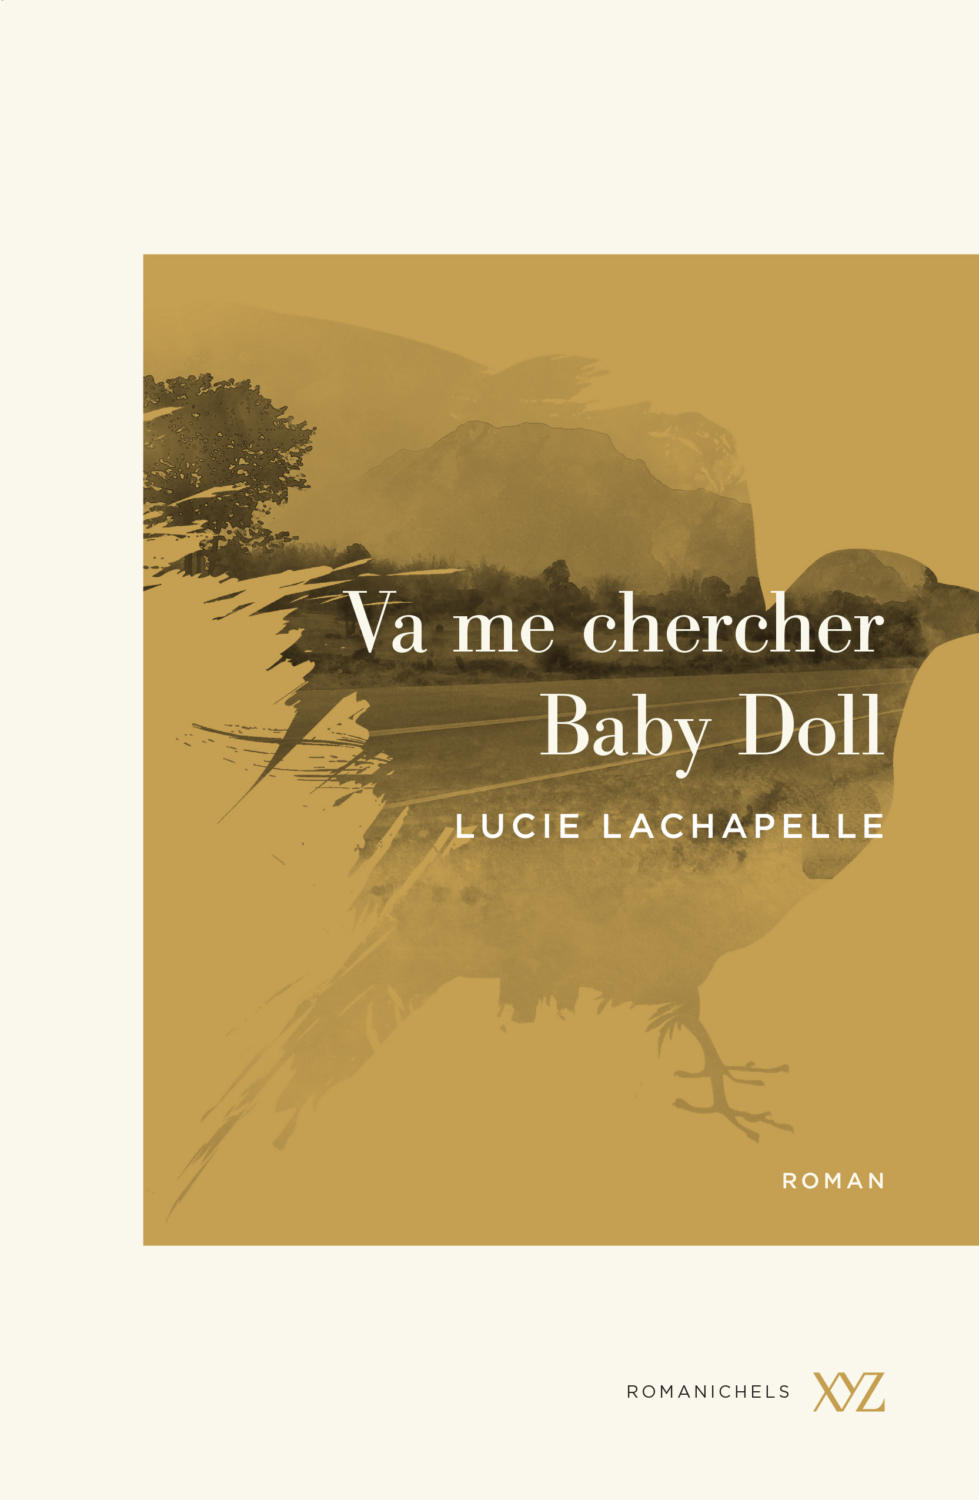 Roman de Lucie Lachapelle